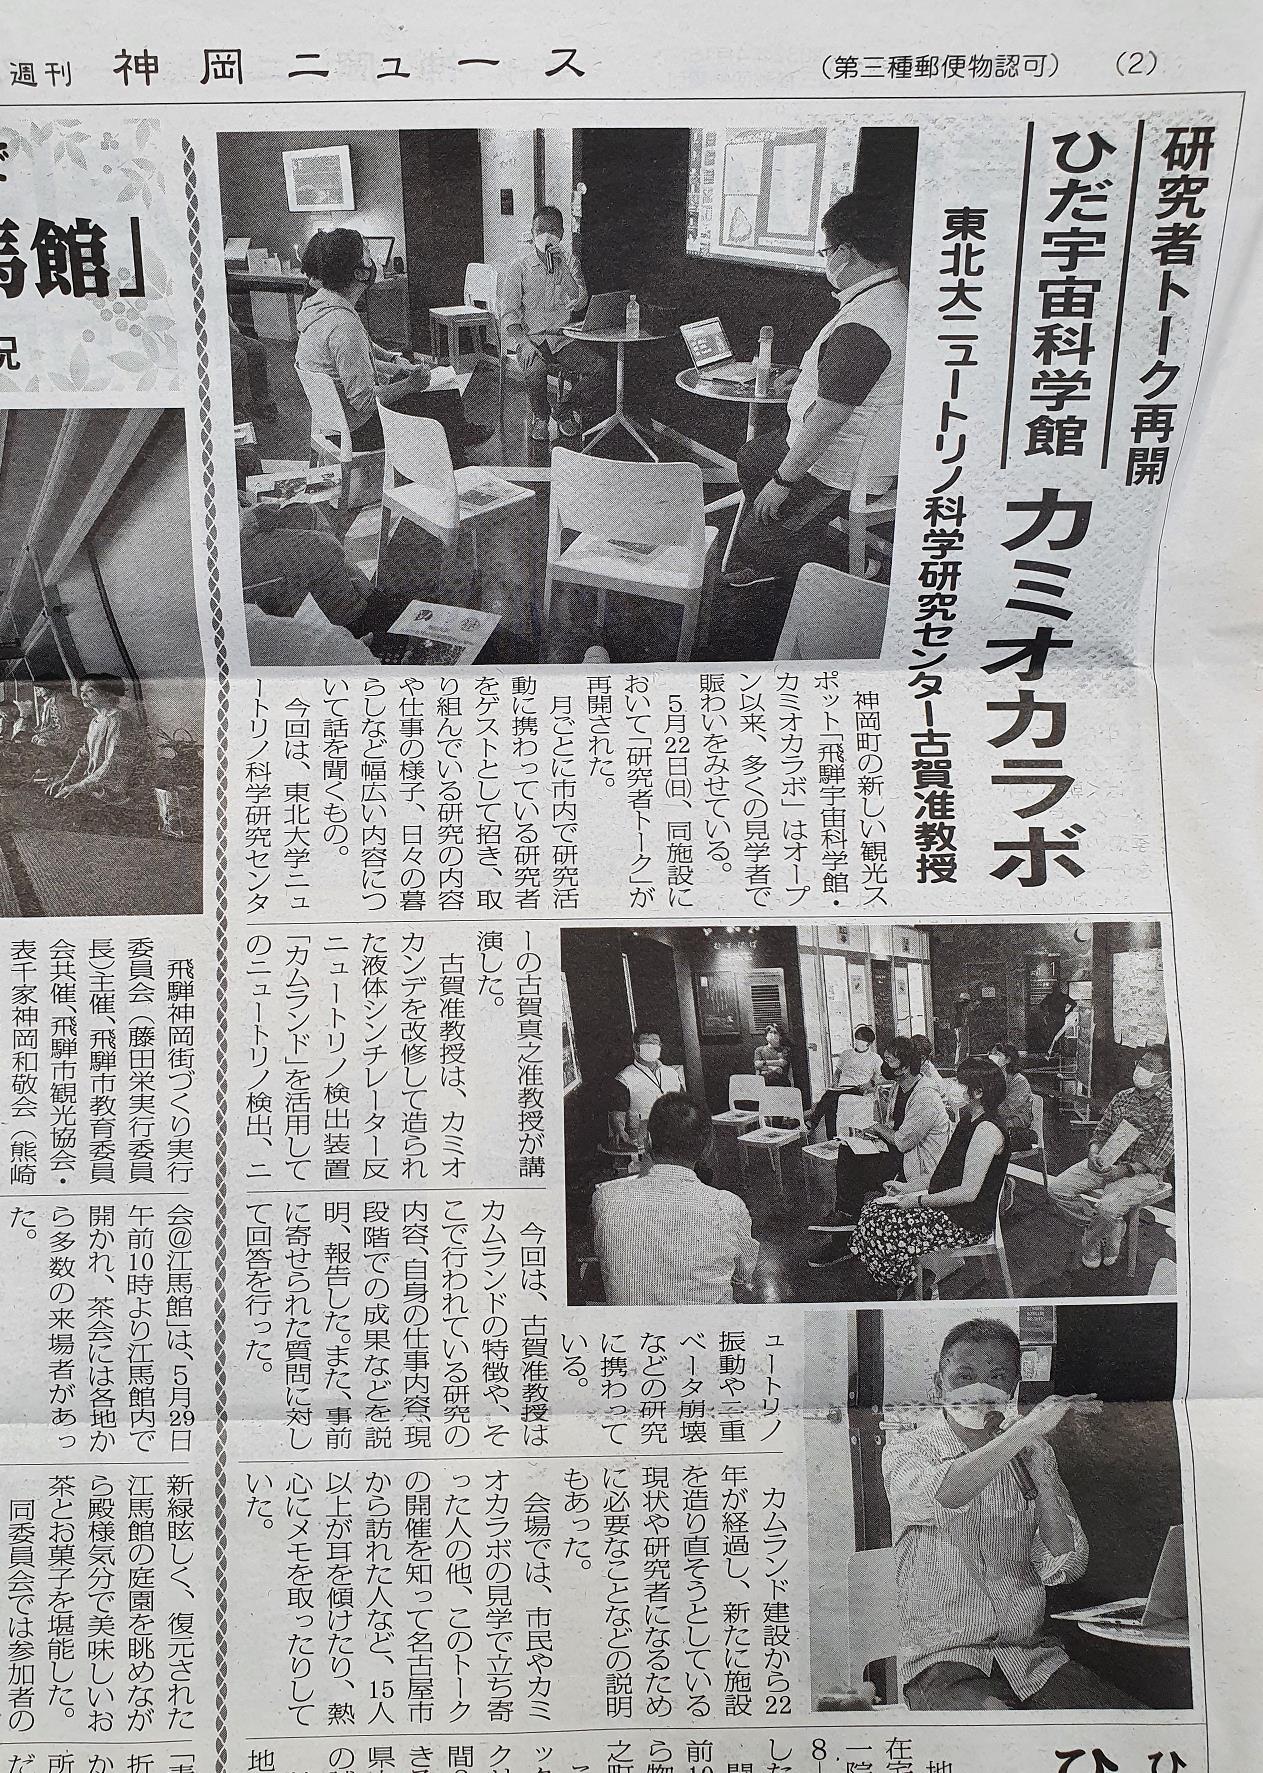 kamioka news May